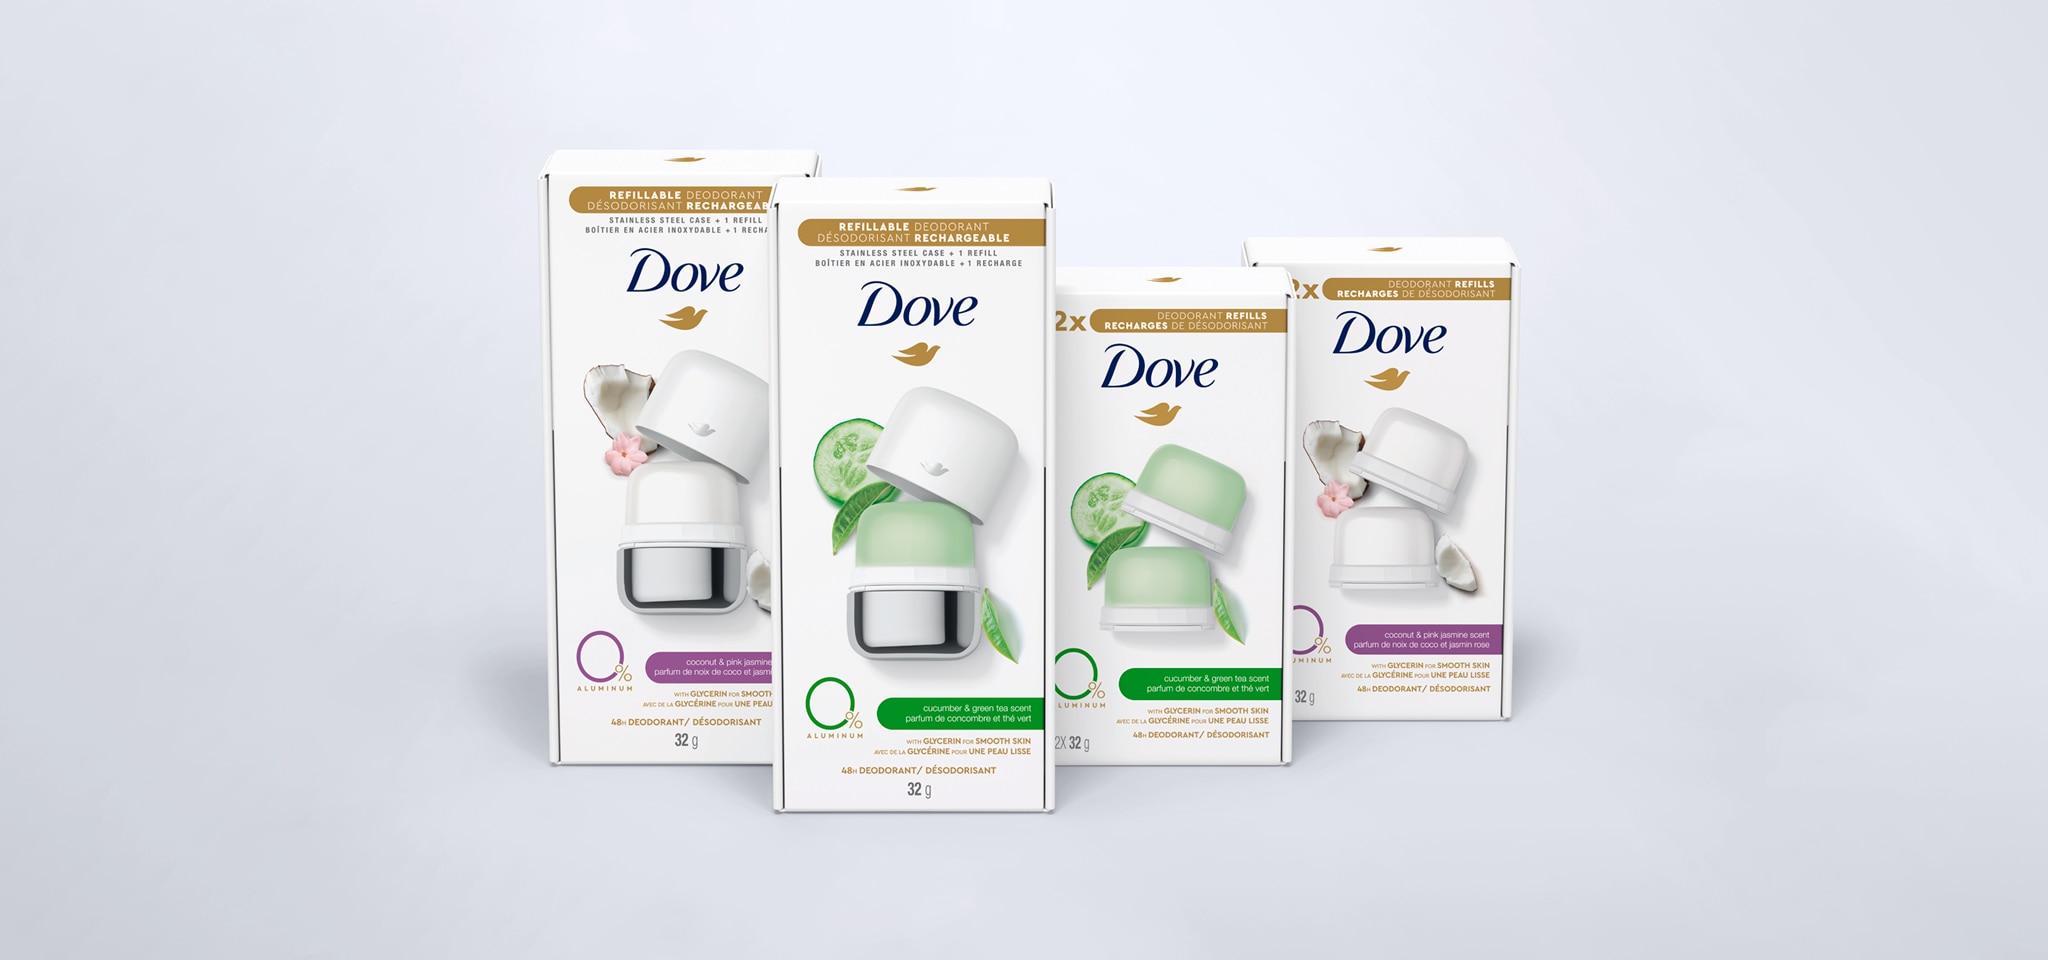 Lancement de notre premier désodorisant réutilisable rechargeable Dove